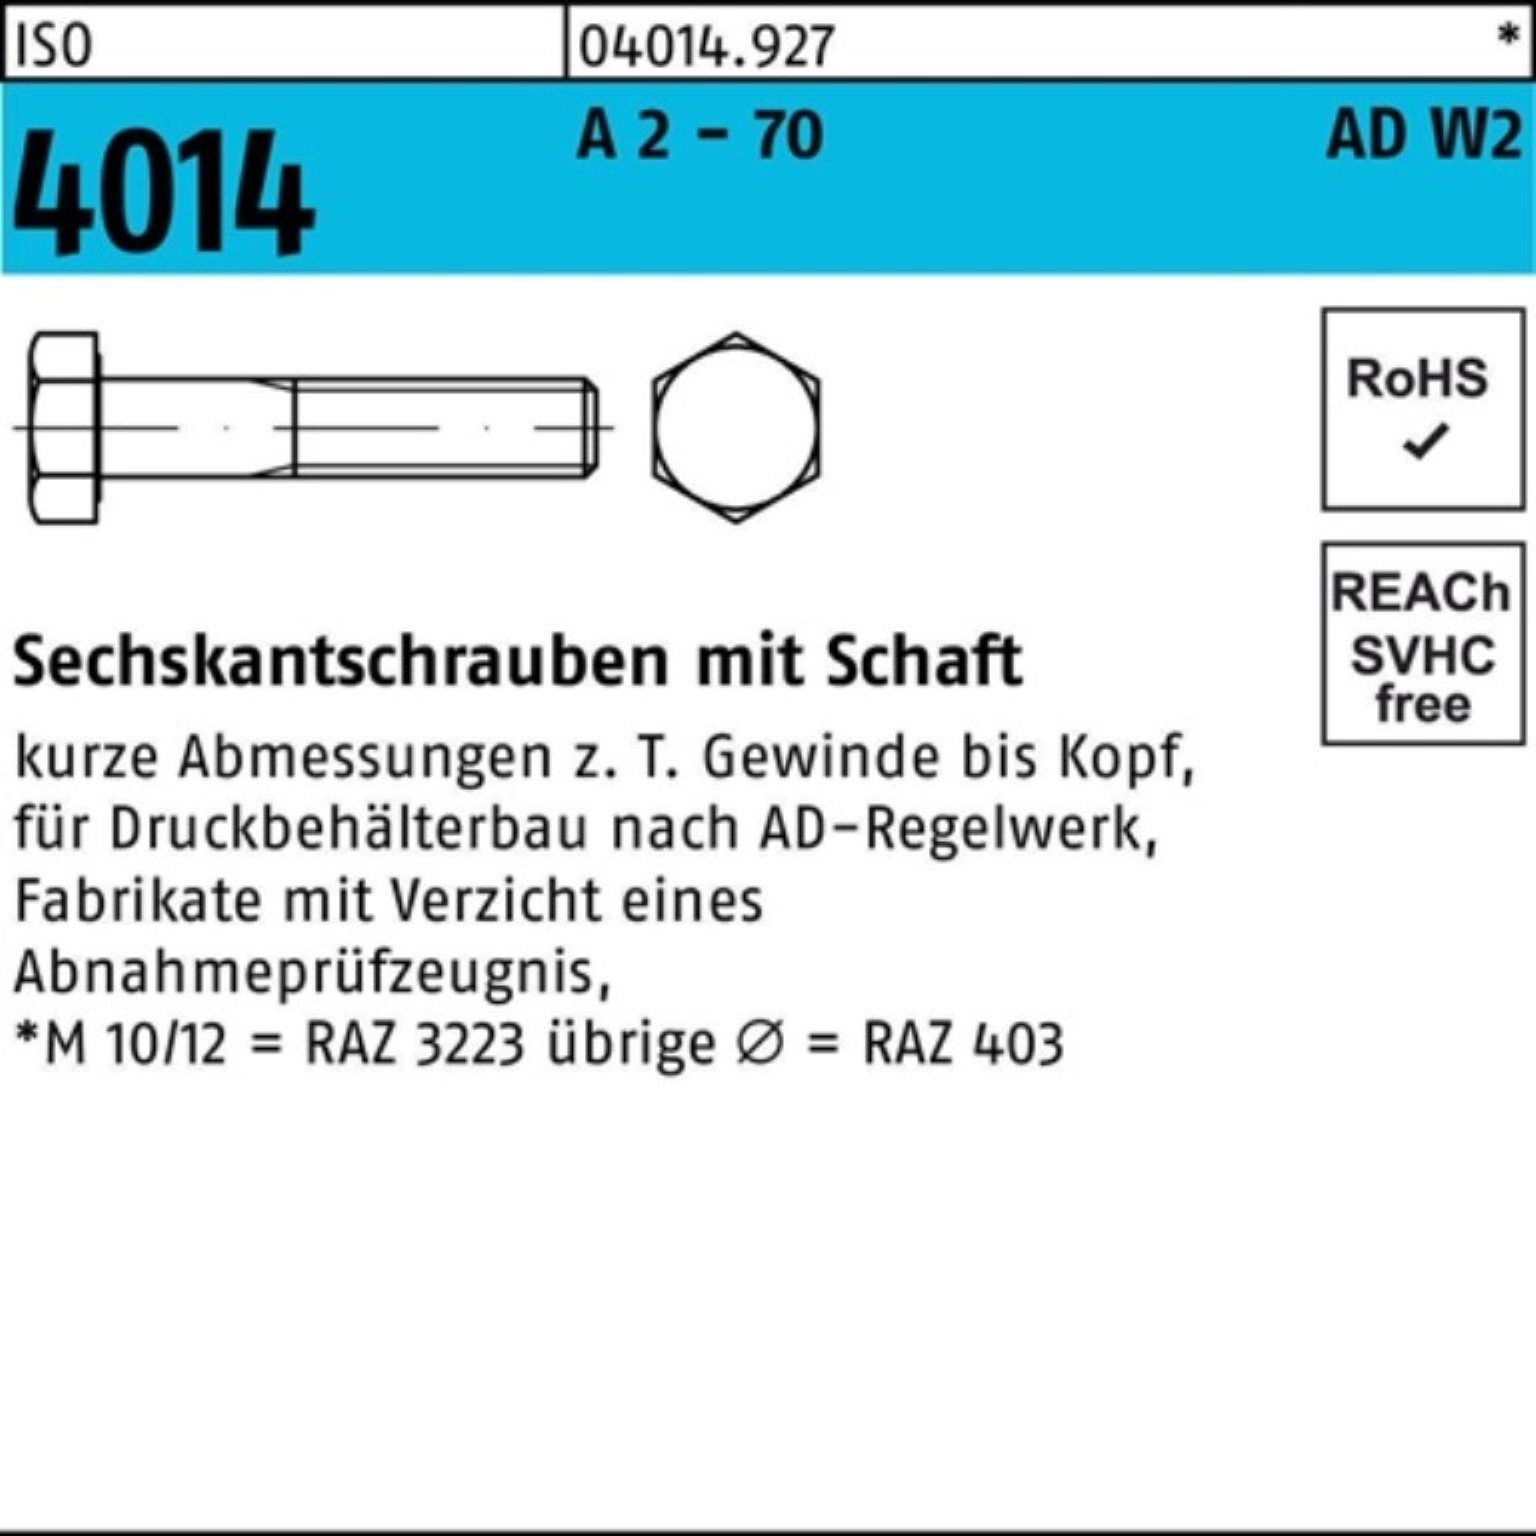 ISO - Pack Sechskantschraube 1 4014 A M16x 2 Sechskantschraube Bufab 100er 160 Schaft AD-W2 70